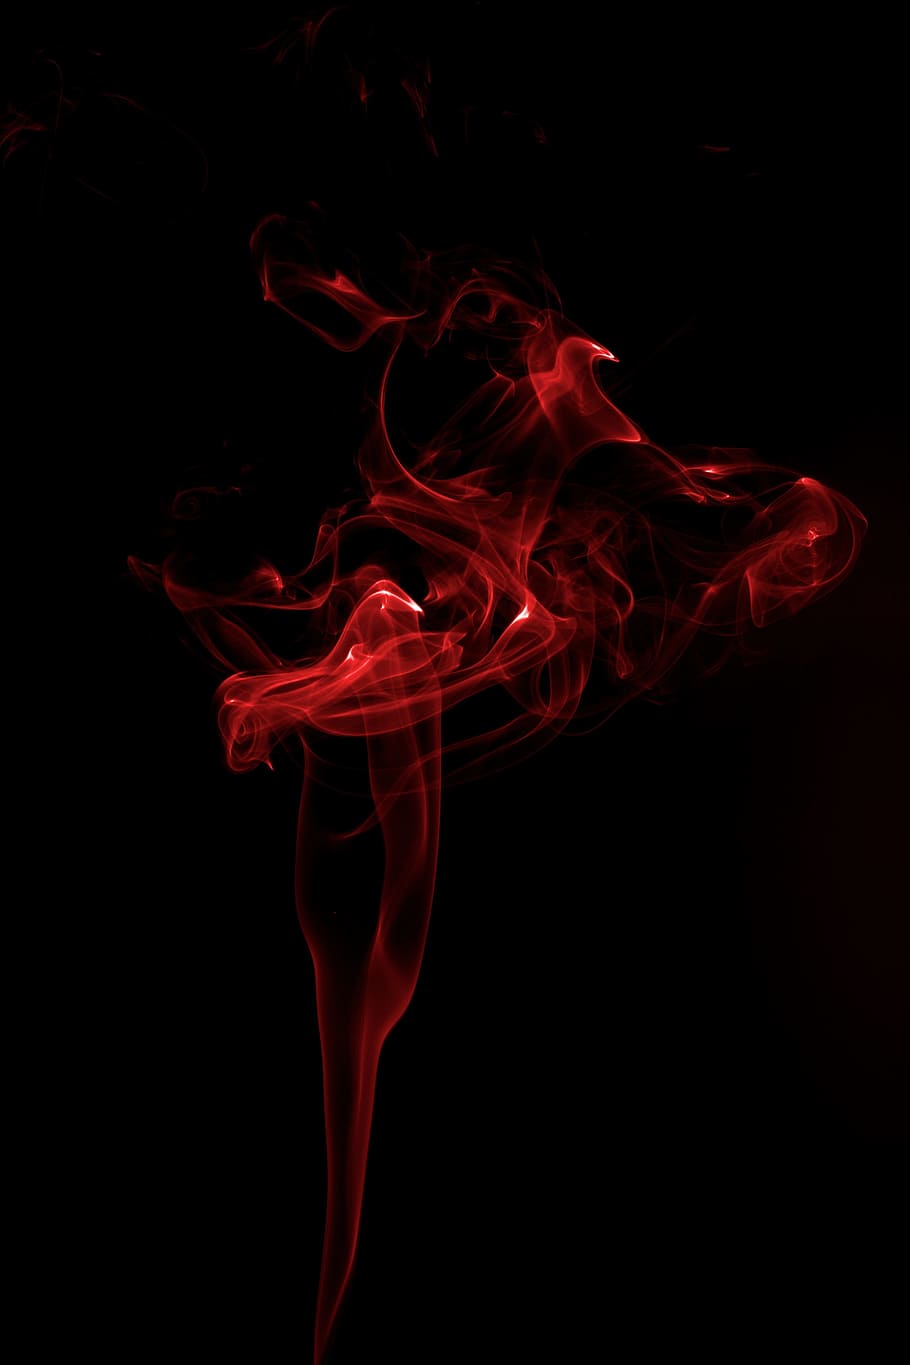 煙, アート, 赤, 煙-物理的構造, 黒の背景, 抽象, 人なし, 液体, スタジオ撮影, モーション